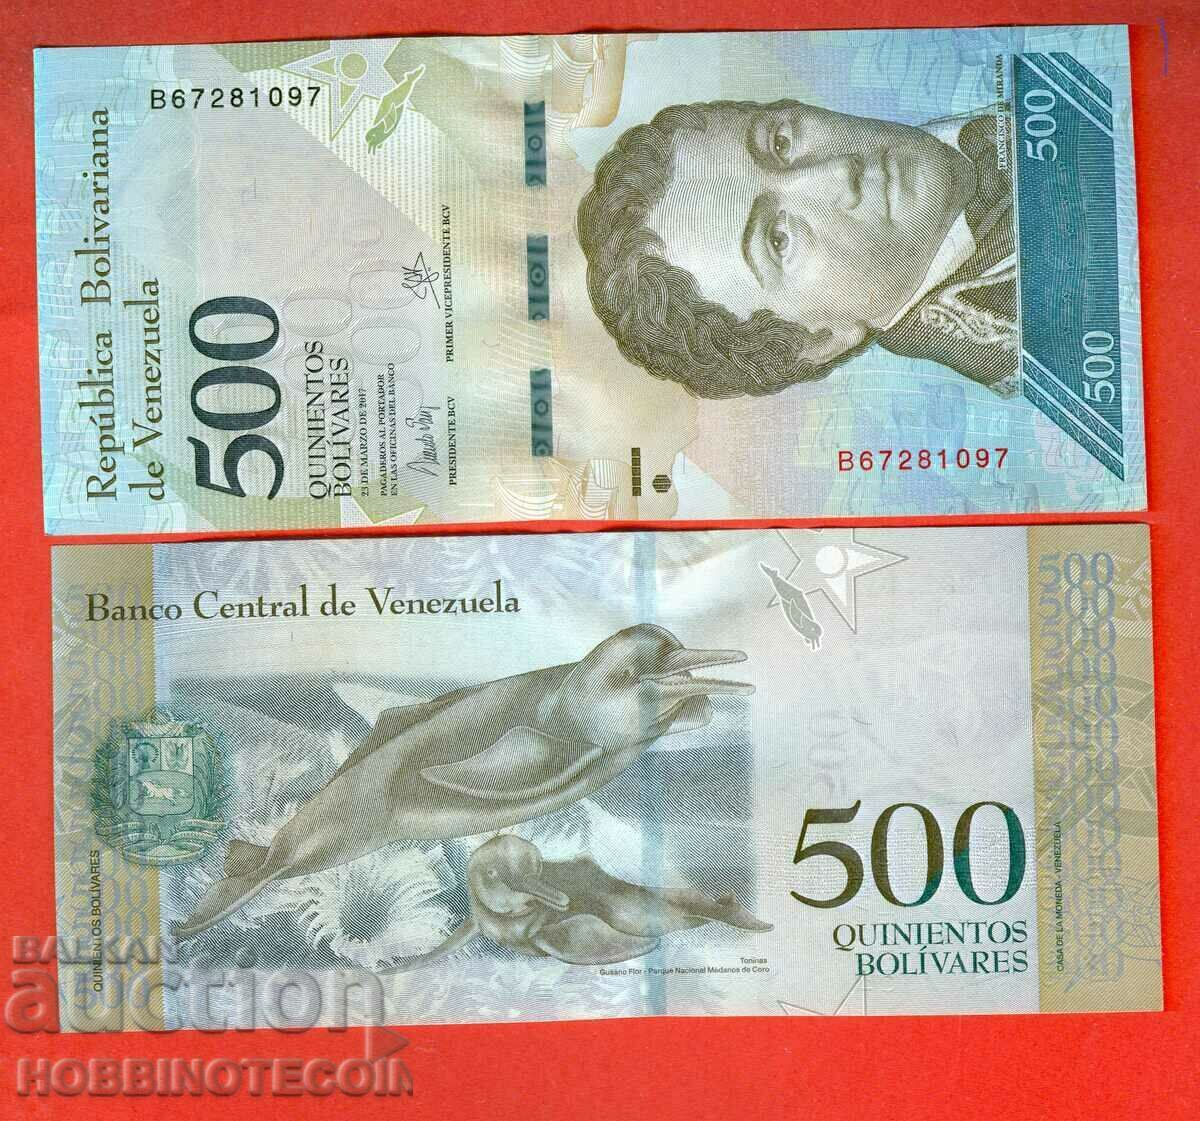 ВЕНЕЦУЕЛА VENEZUELA 500 Боливара issue 23 03 2017 НОВА UNC